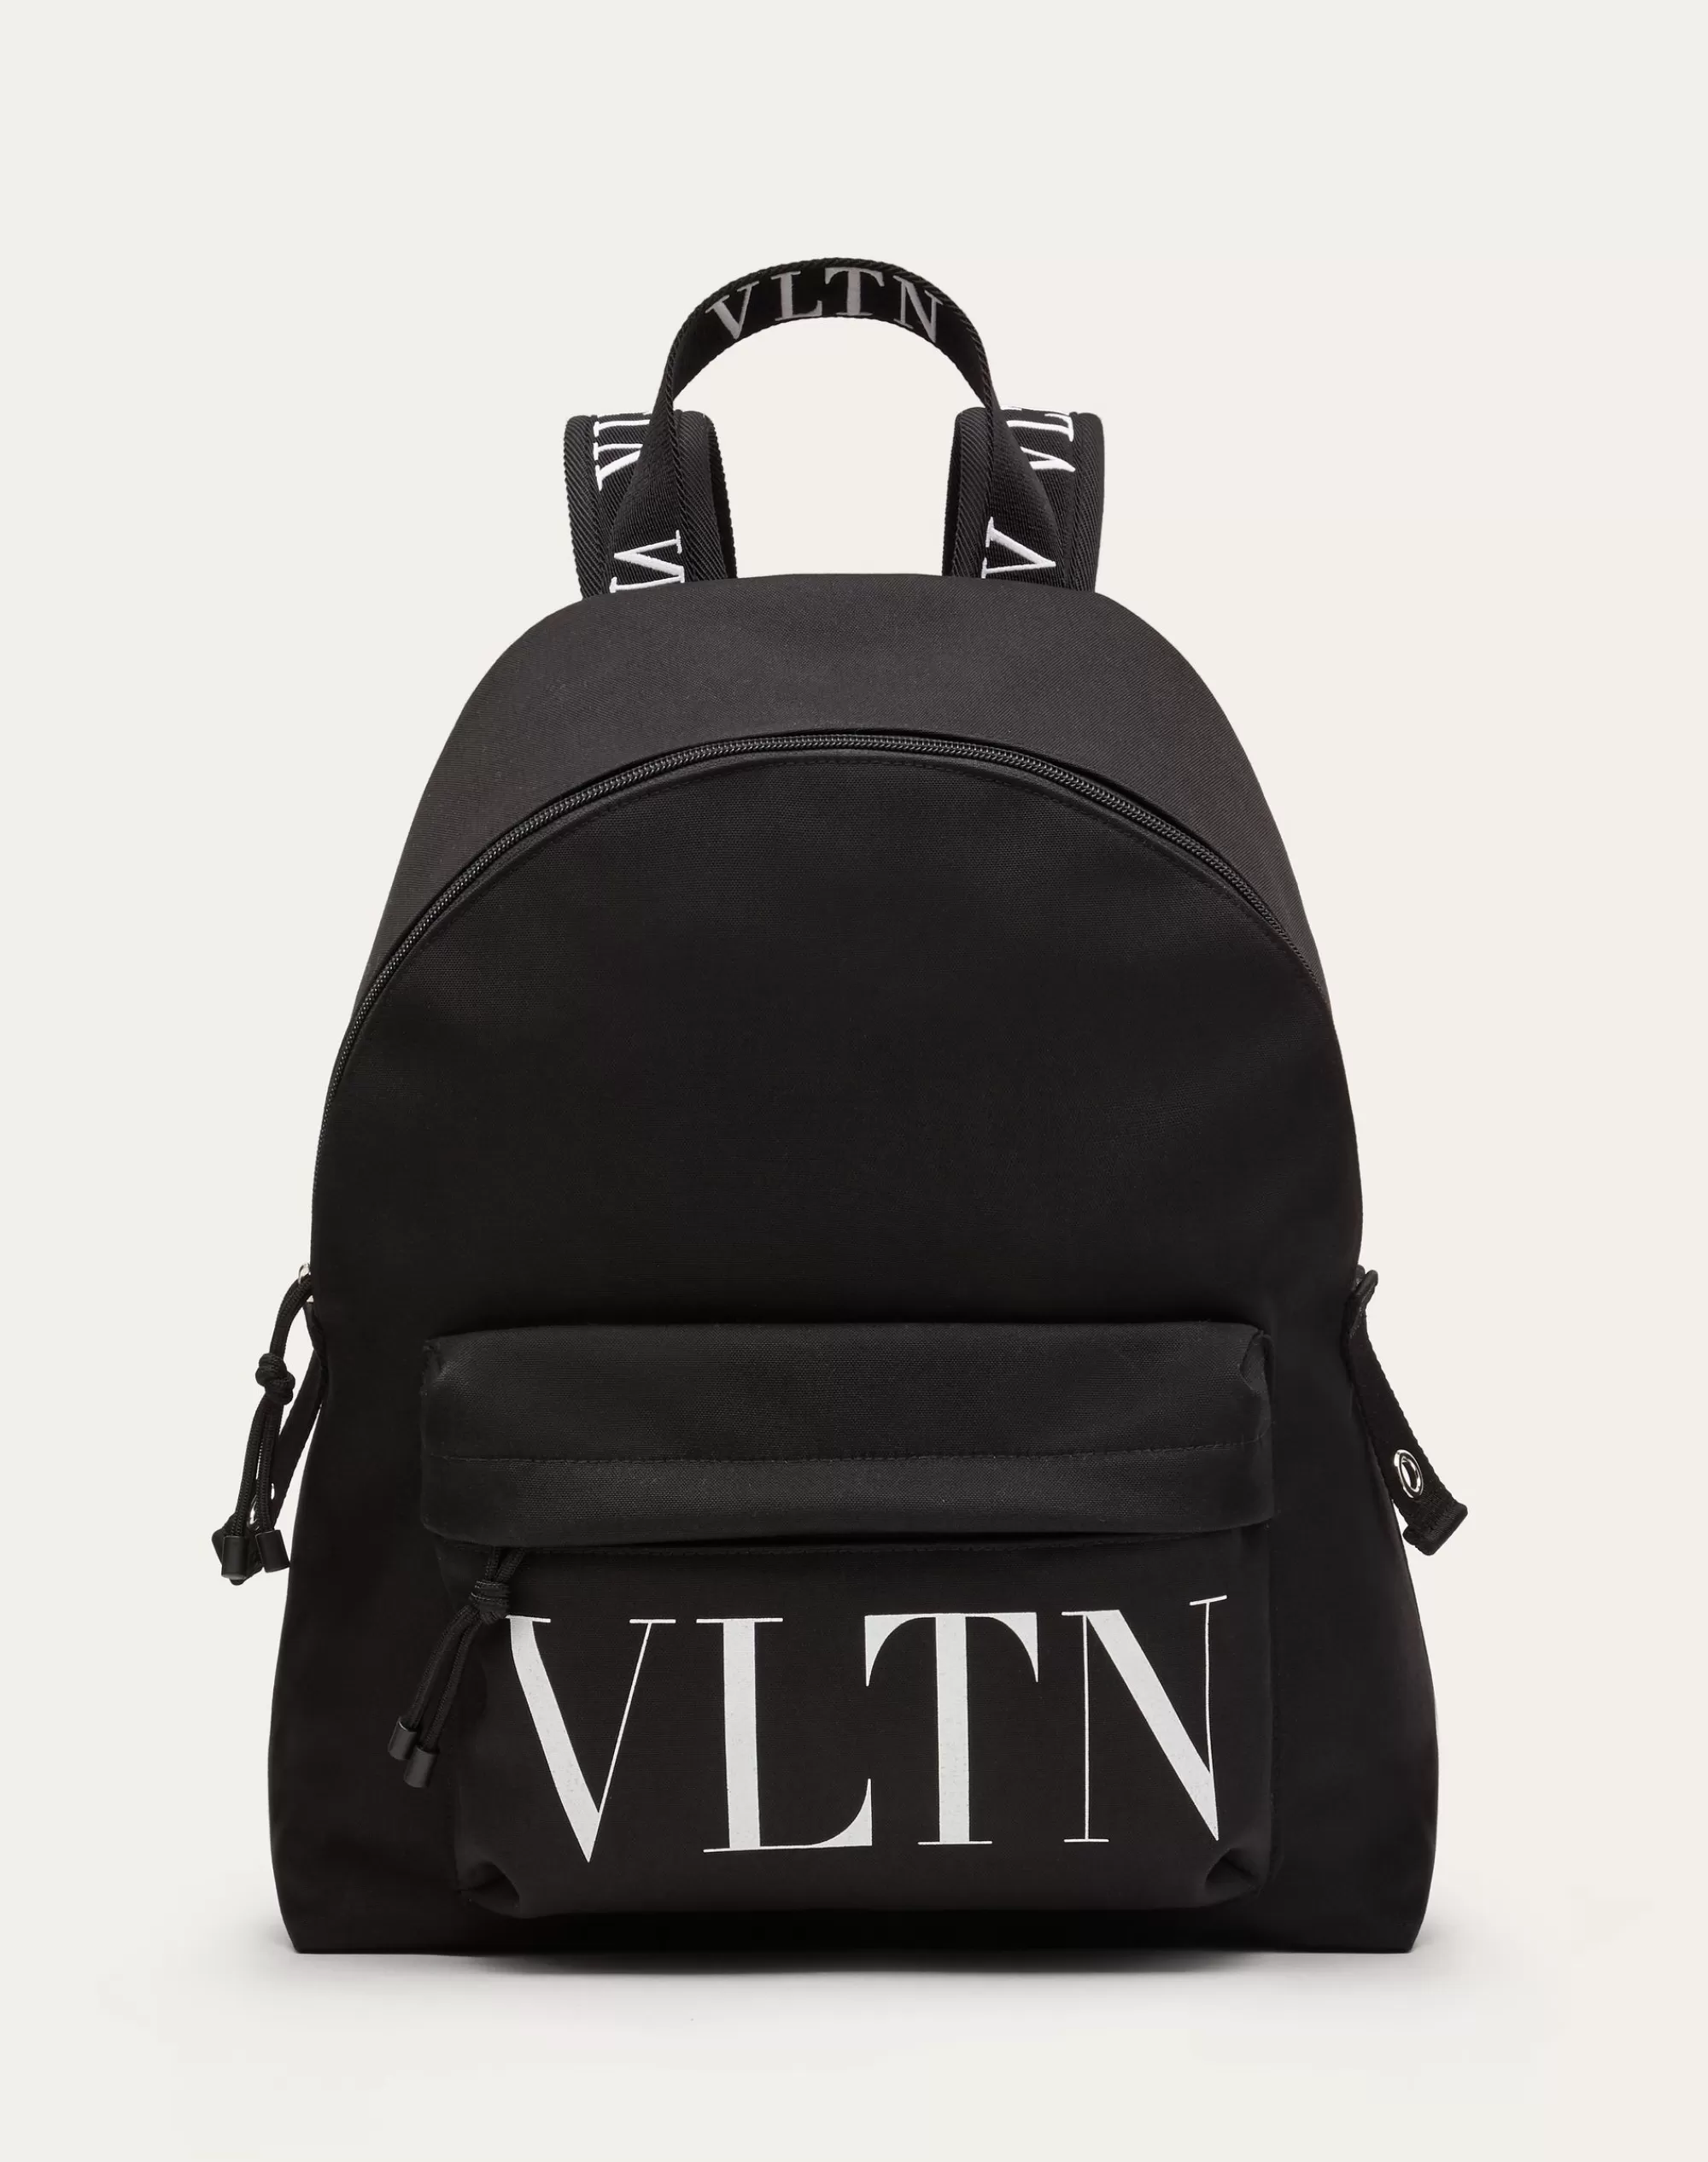 Valentino VLTN NYLON BACKPACK Black Best Sale